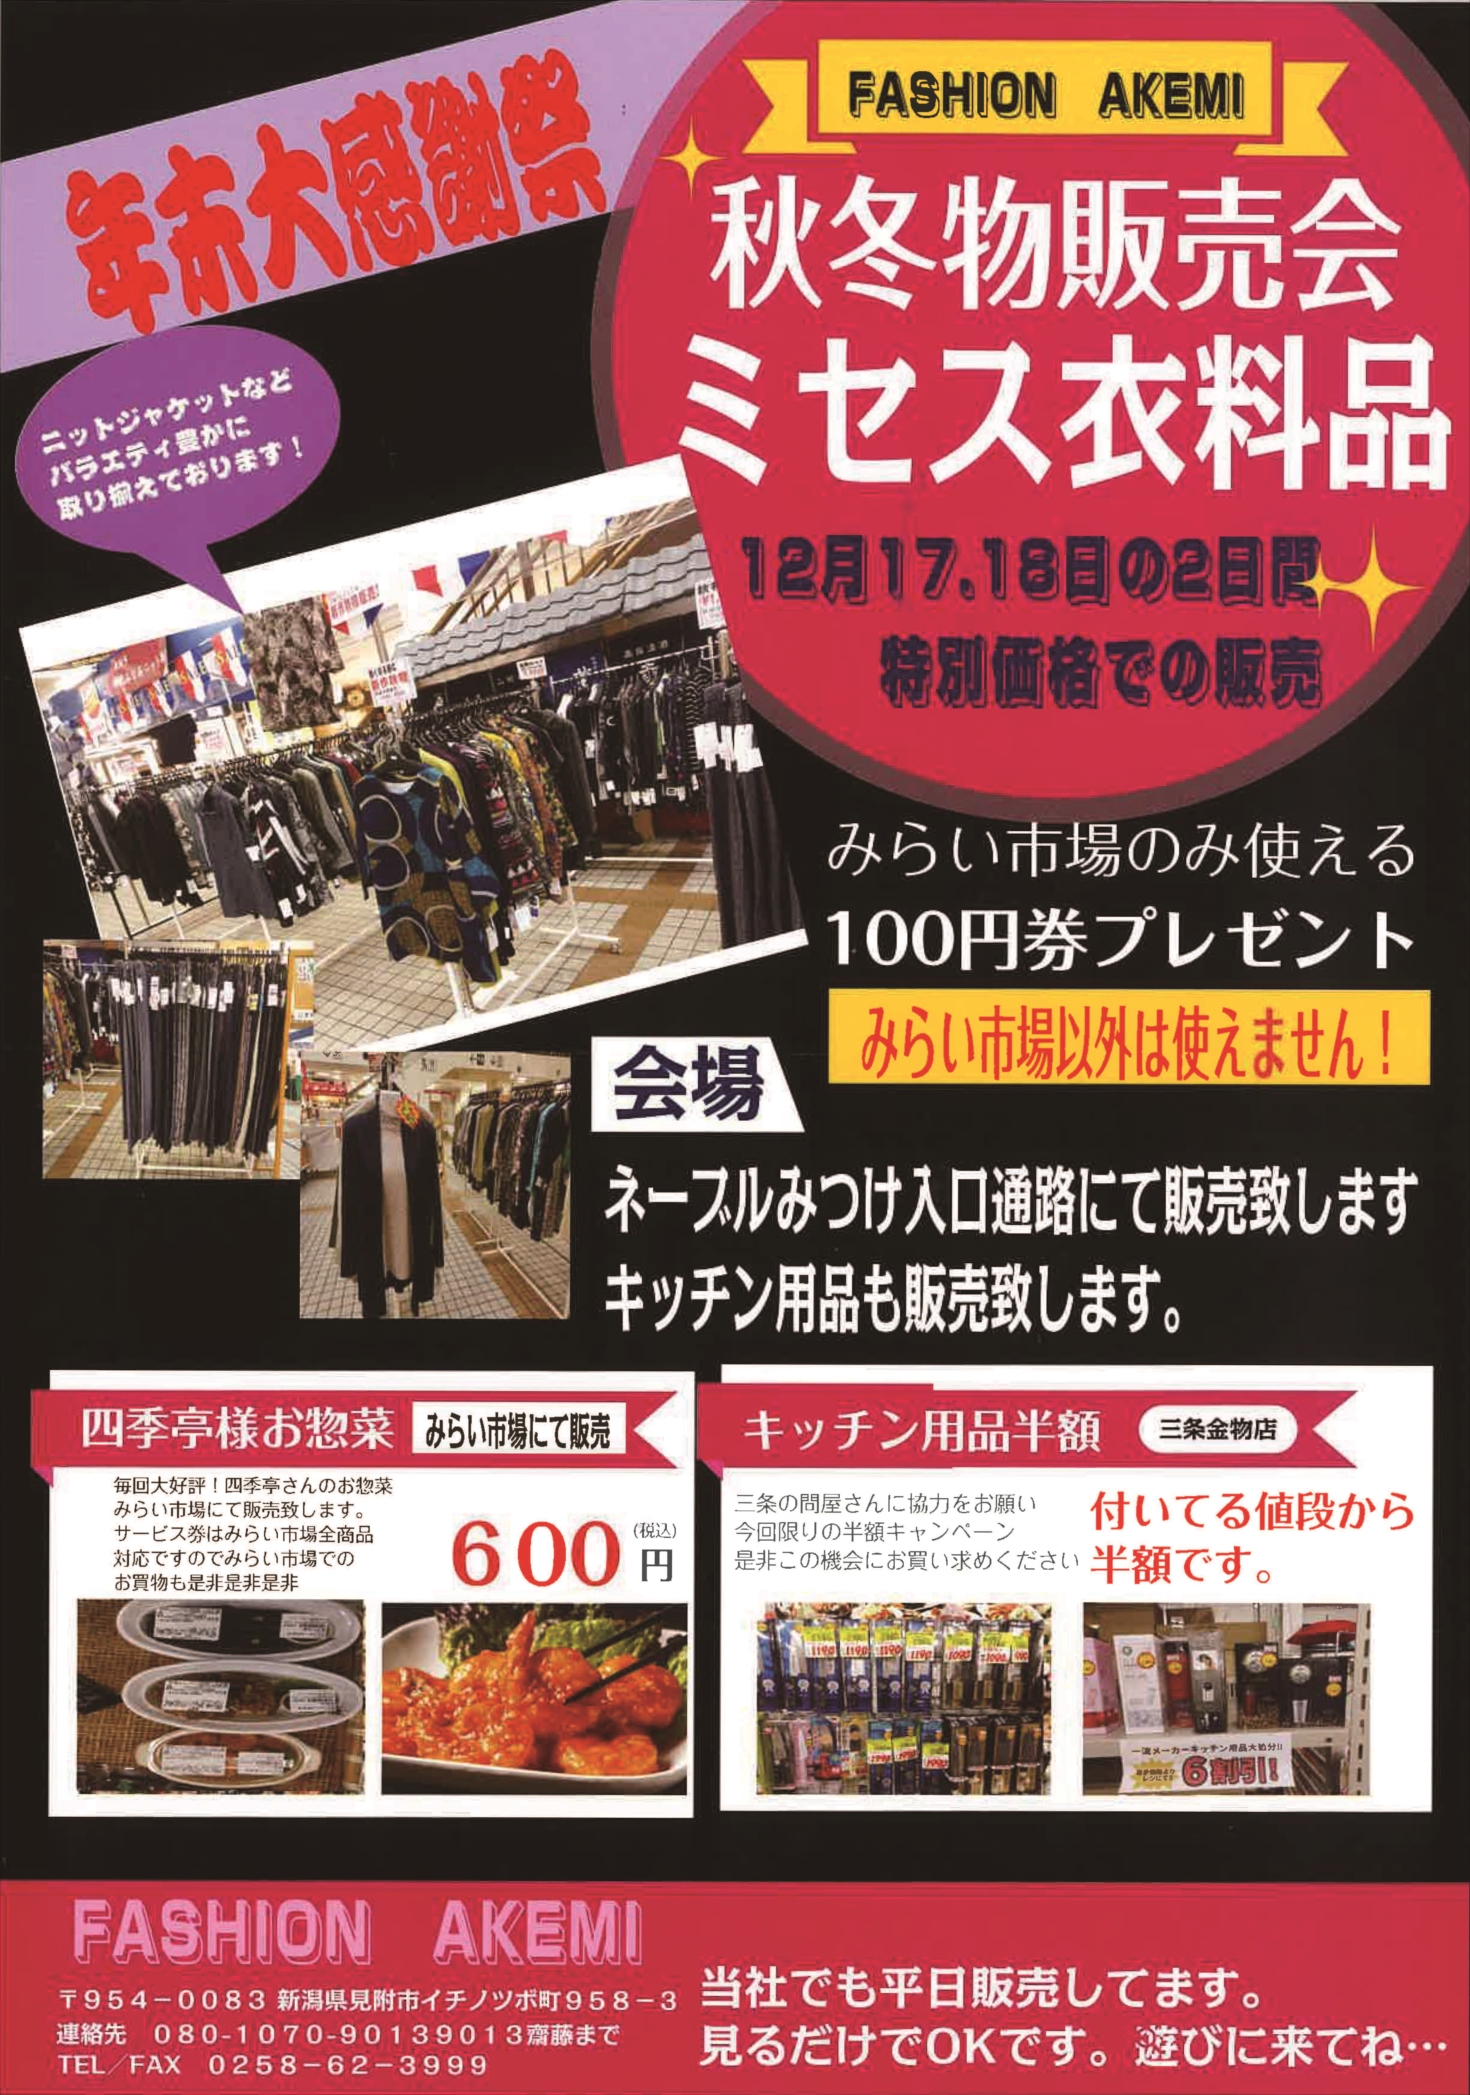 【見附市特産品販売所「みらい市場」】FASHION AKEMIの「秋冬物販売会ミセス衣料品」を12/17、18の2日間は、特別価格で販売します！